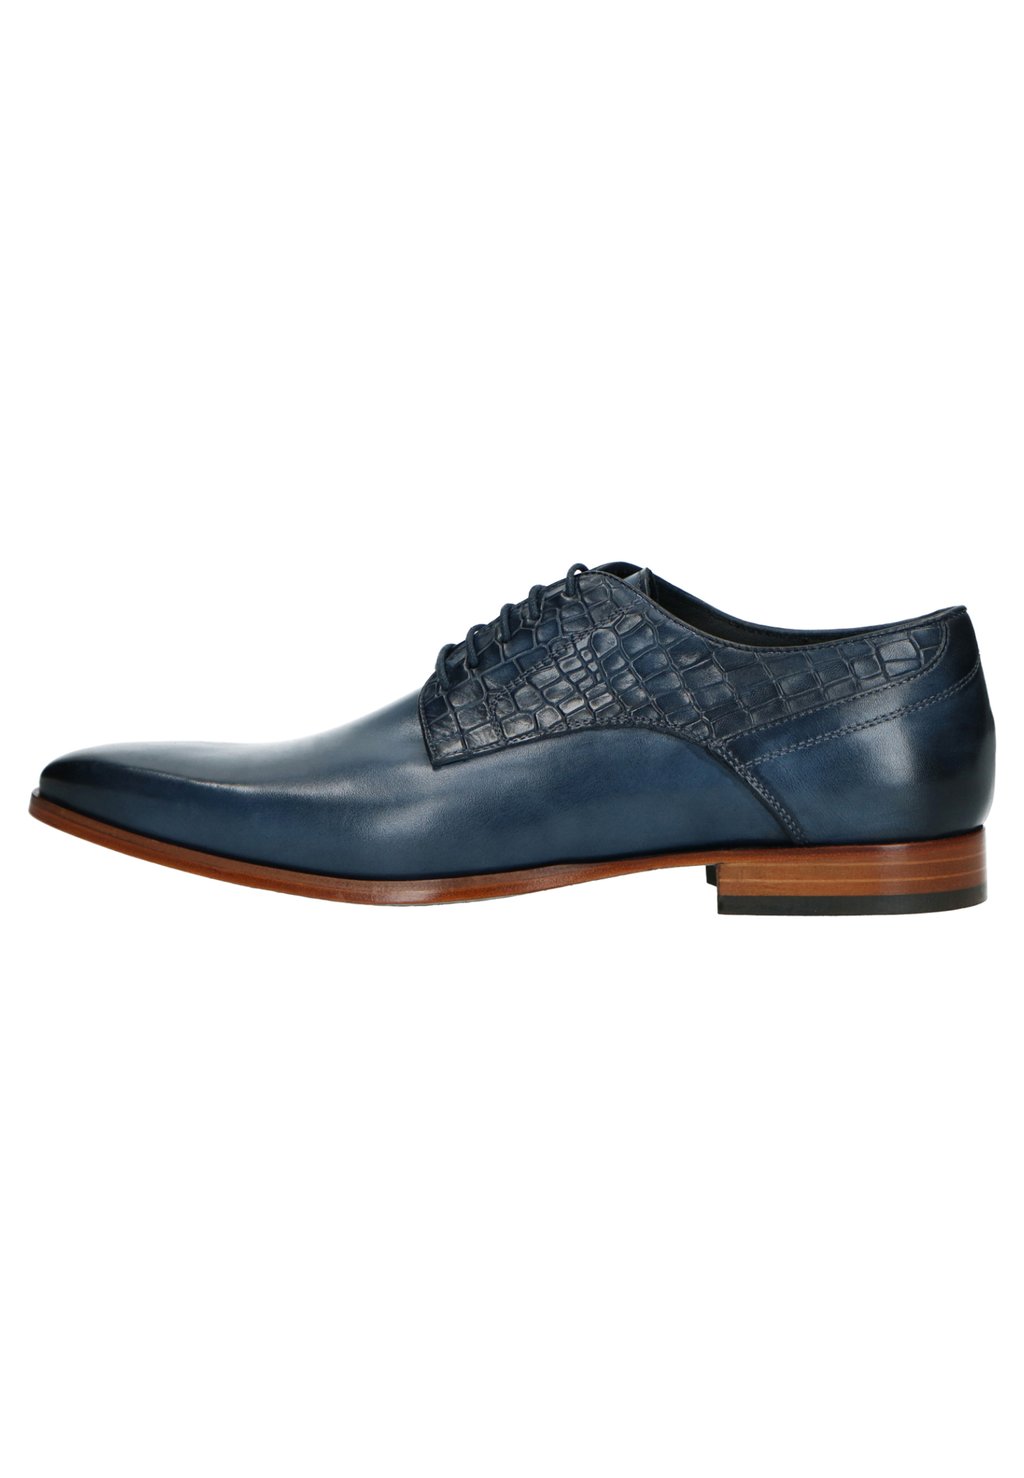 Деловые туфли на шнуровке Manfield, цвет blau деловые туфли на шнуровке suffolk lloyd цвет blau